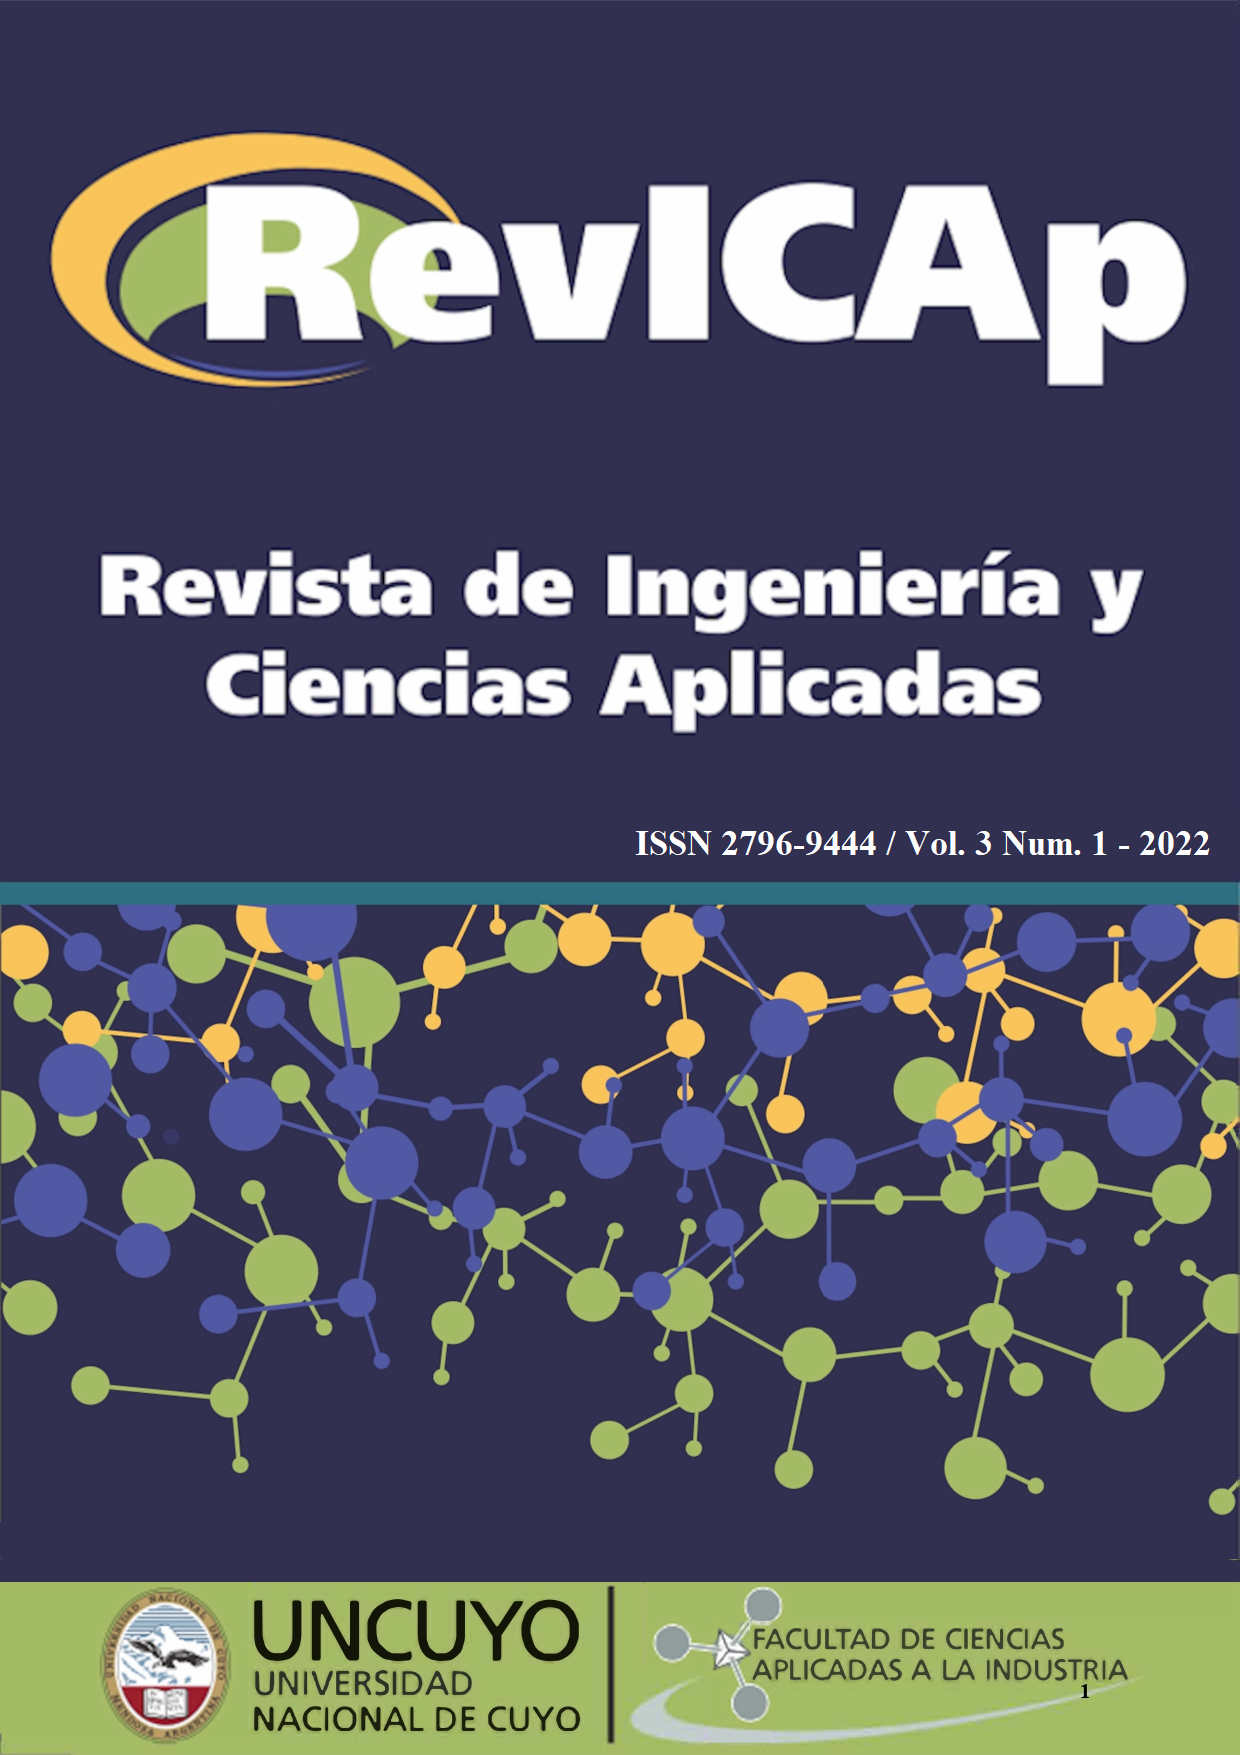 					Ver Vol. 3 Núm. 1 (2022): Revista de Ingeniería y Ciencias Aplicadas (RevICAp)
				